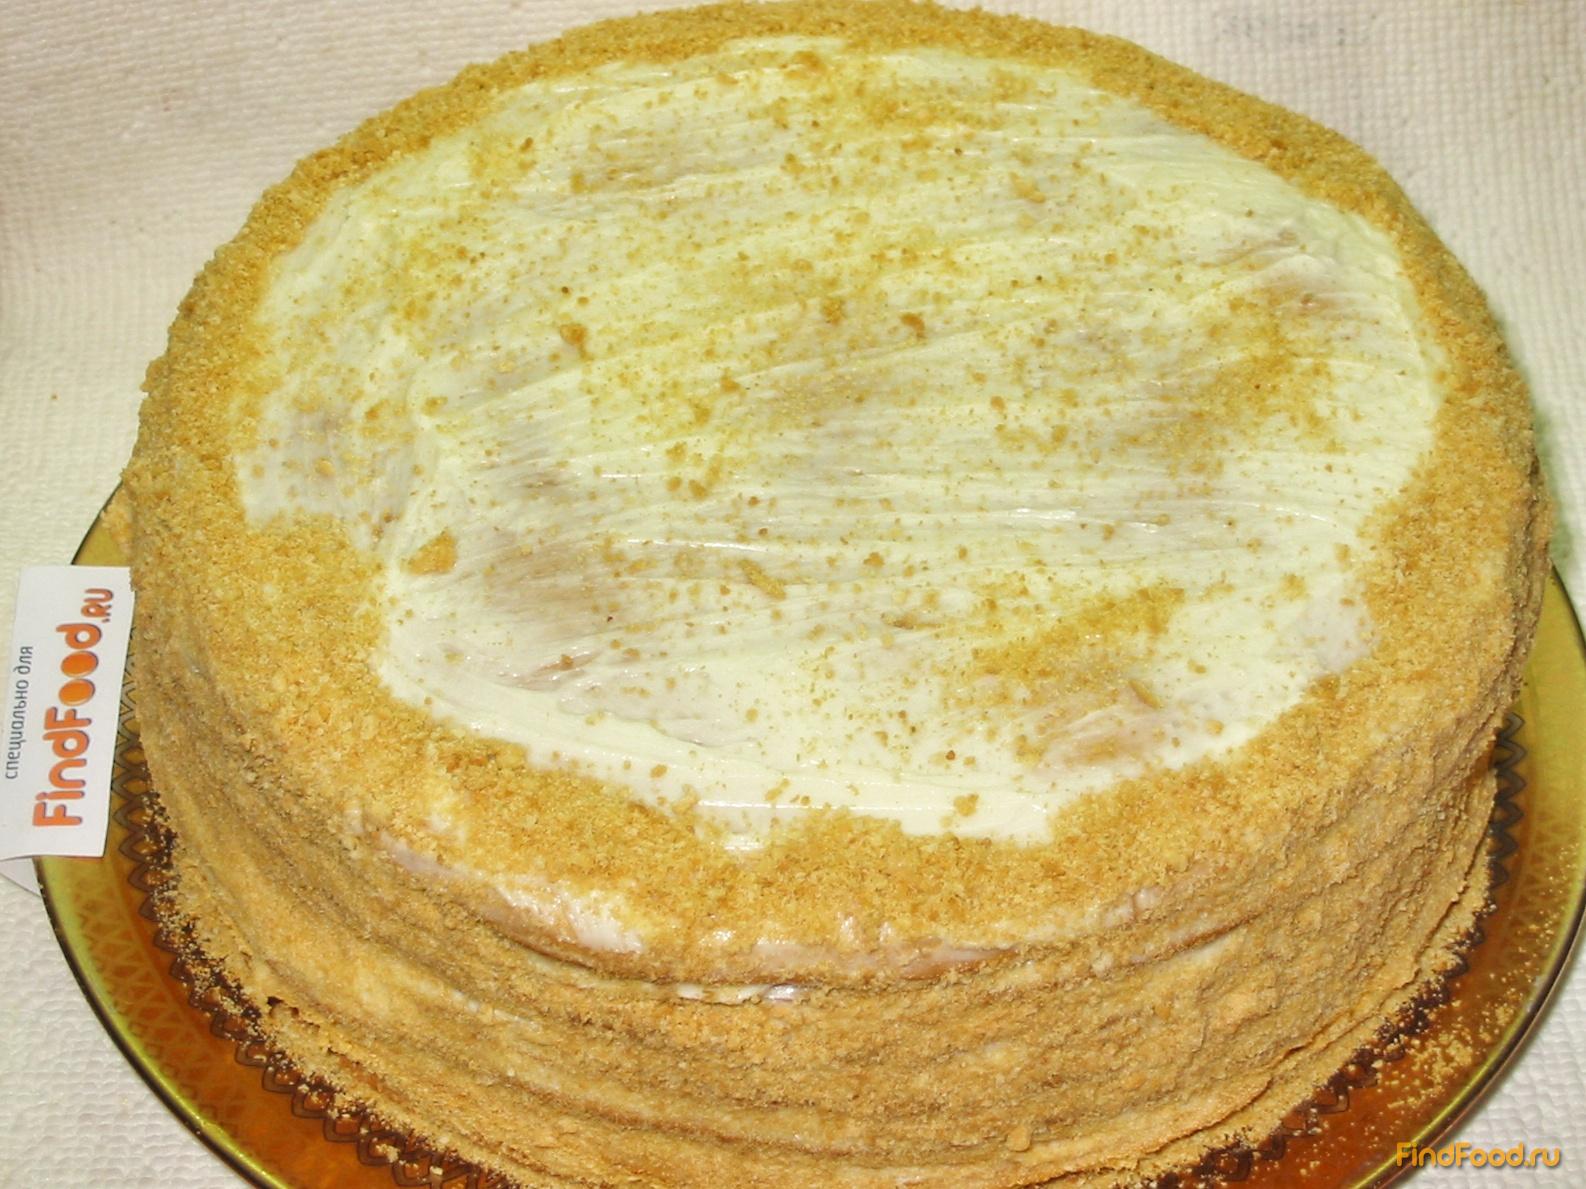 Медовый торт с заварным кремом рецепт с фото 21-го шага 